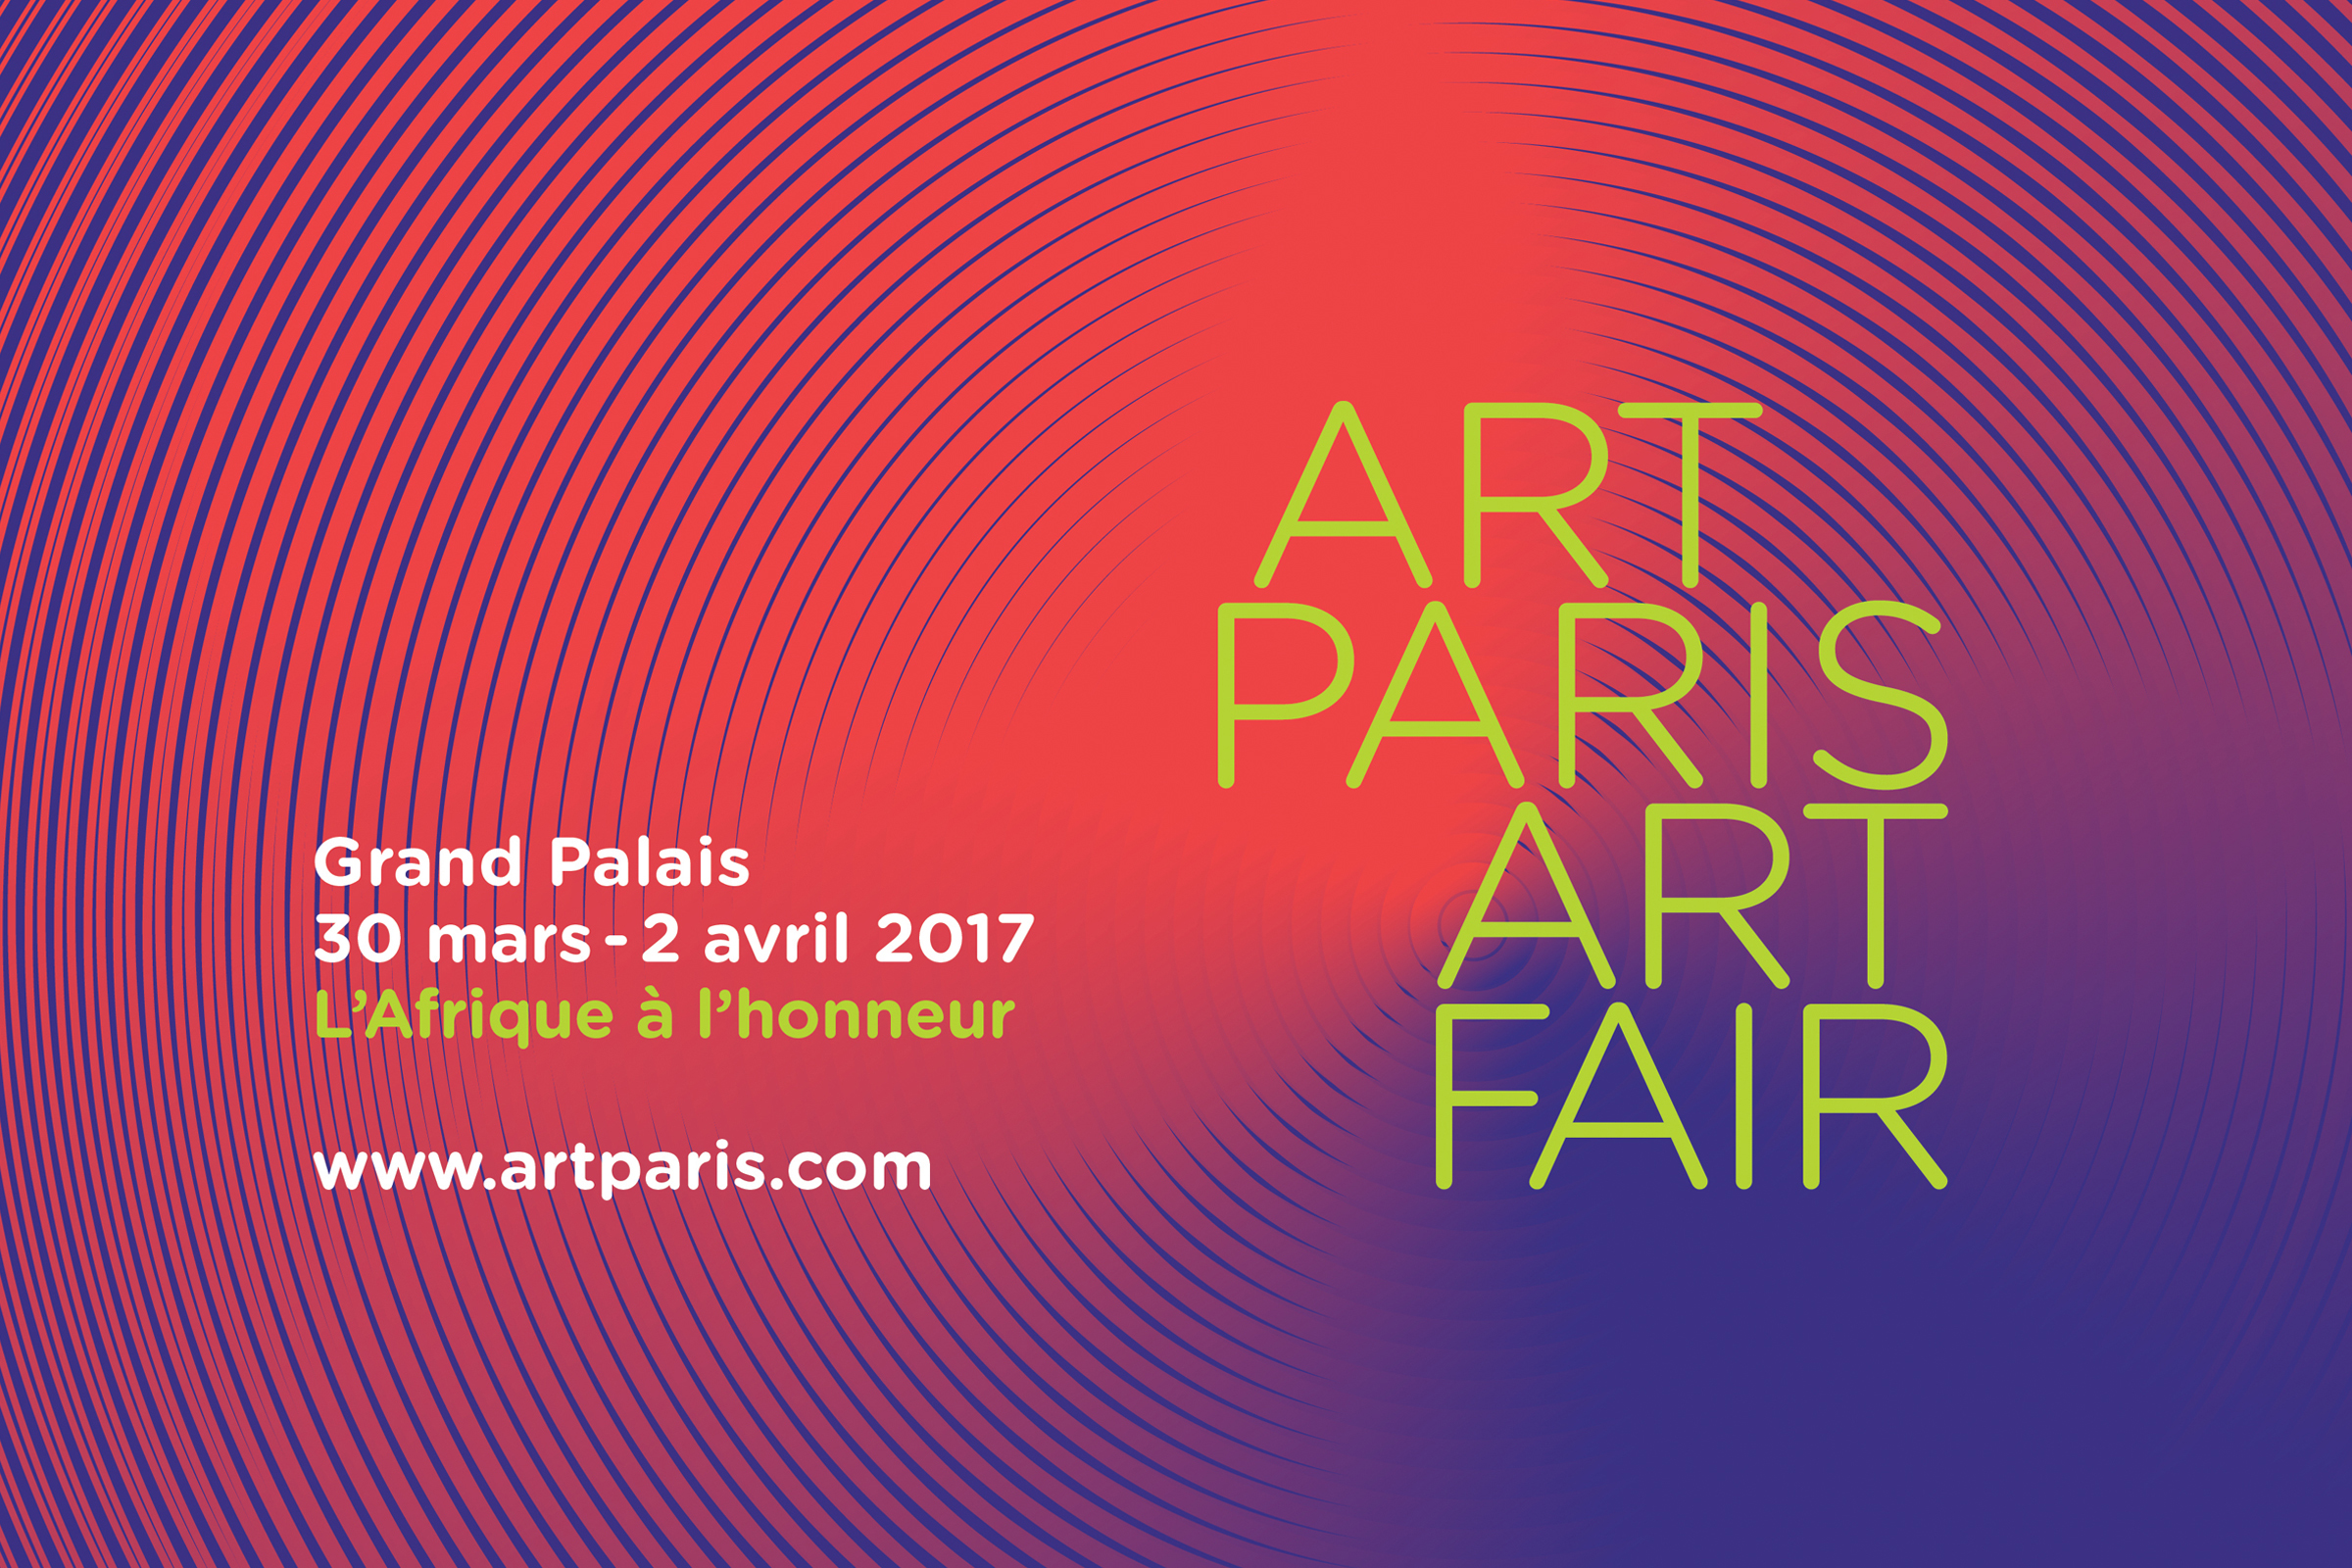 BARDULA - Art paris art fair 2017 - 1